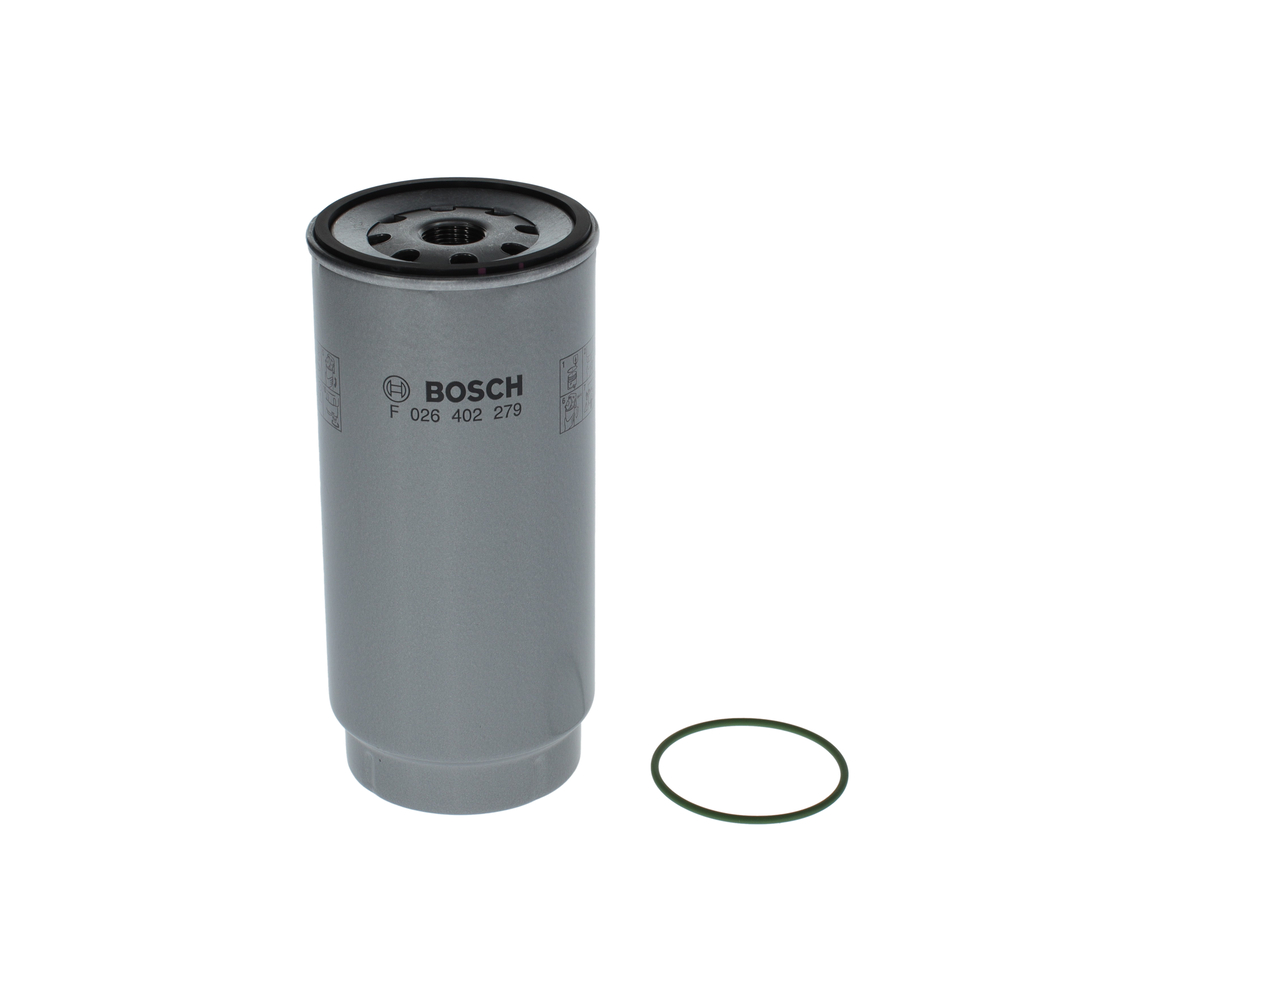 BOSCH F 026 402 279 Fuel filter Spin-on Filter, Pre-Filter